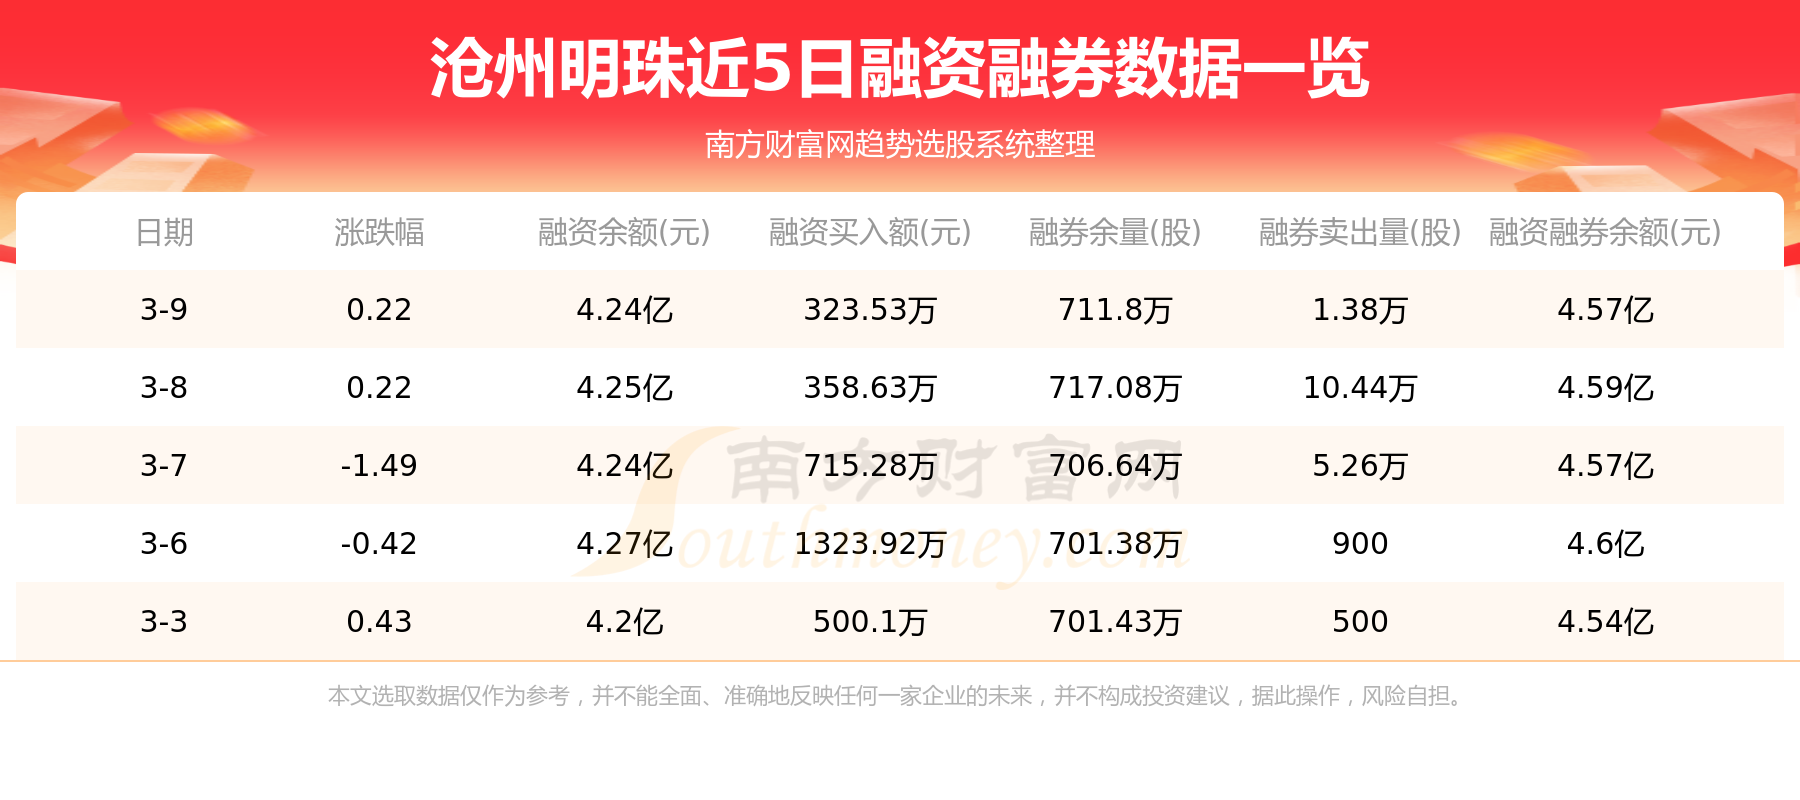 【3月10日资金流向】沧州明珠资金流向一览表